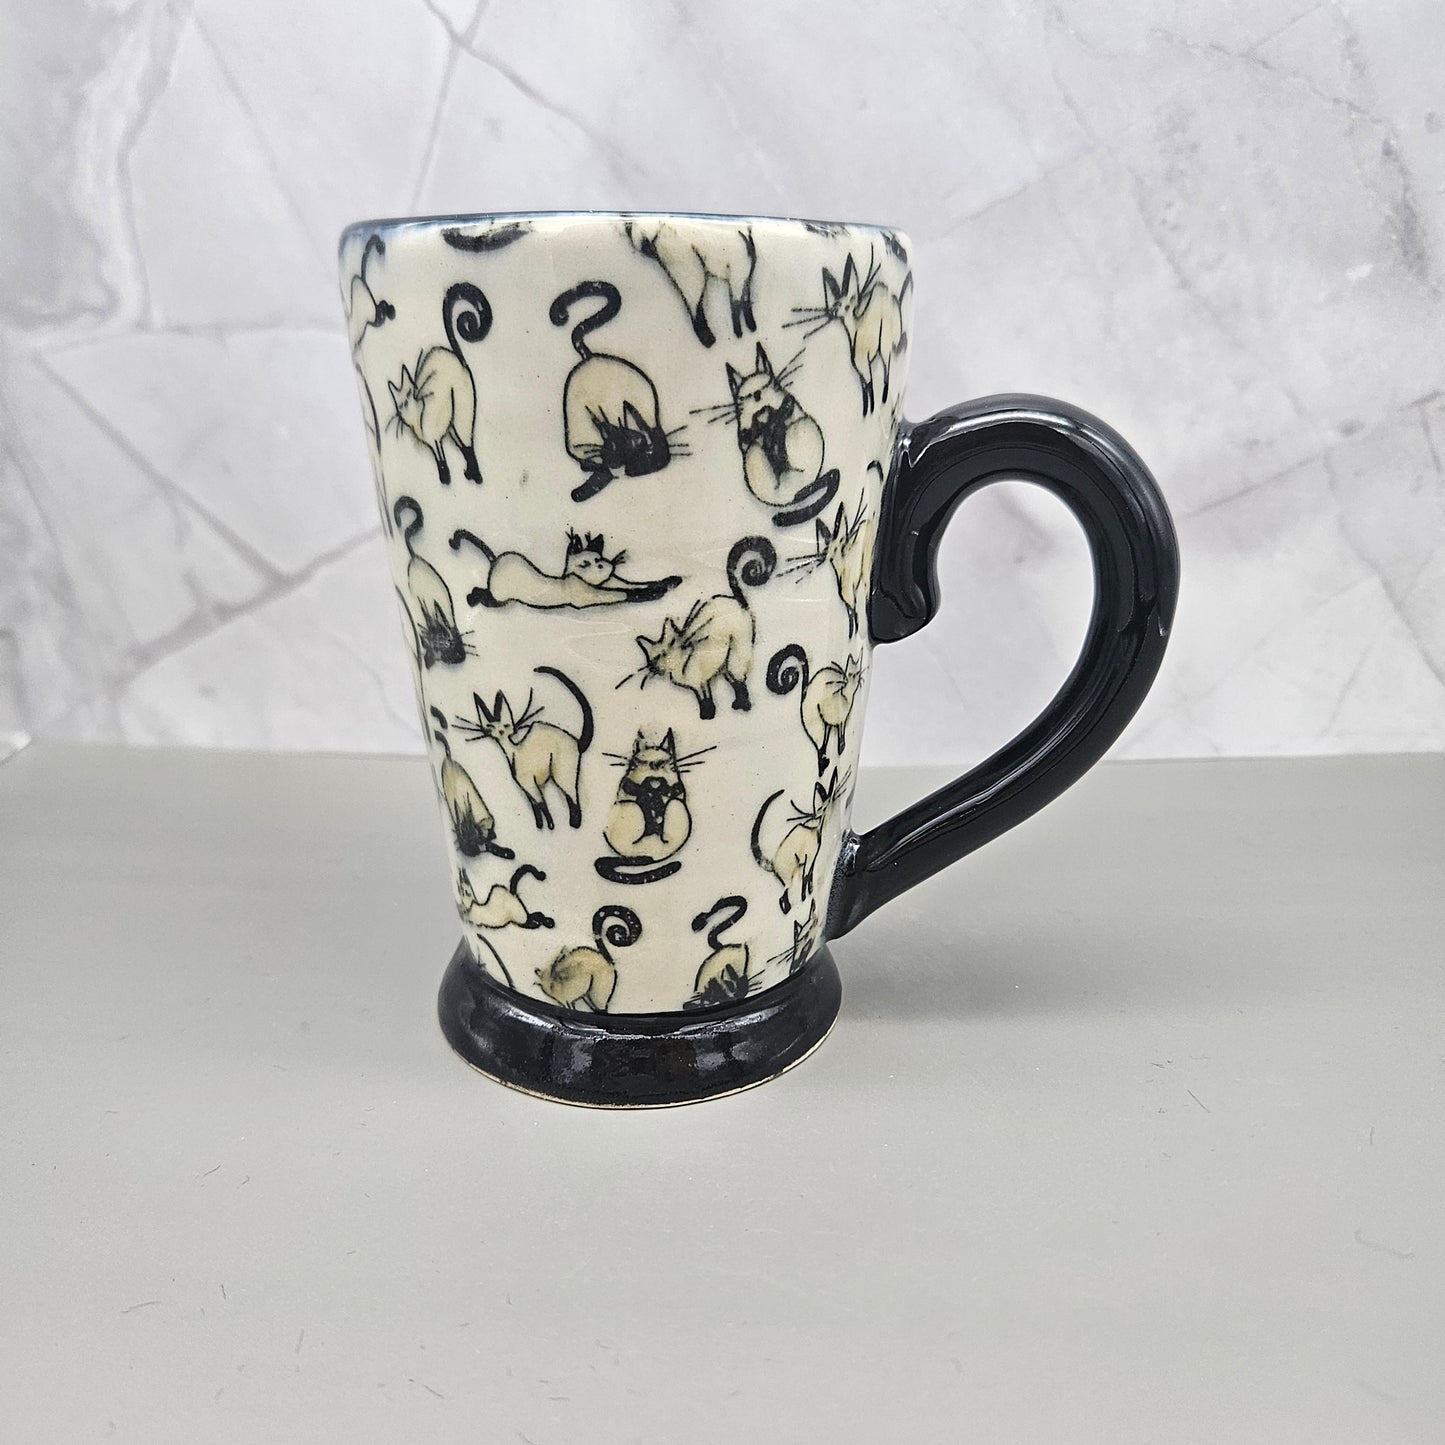 White and black mug with tan kitties, 12 oz.